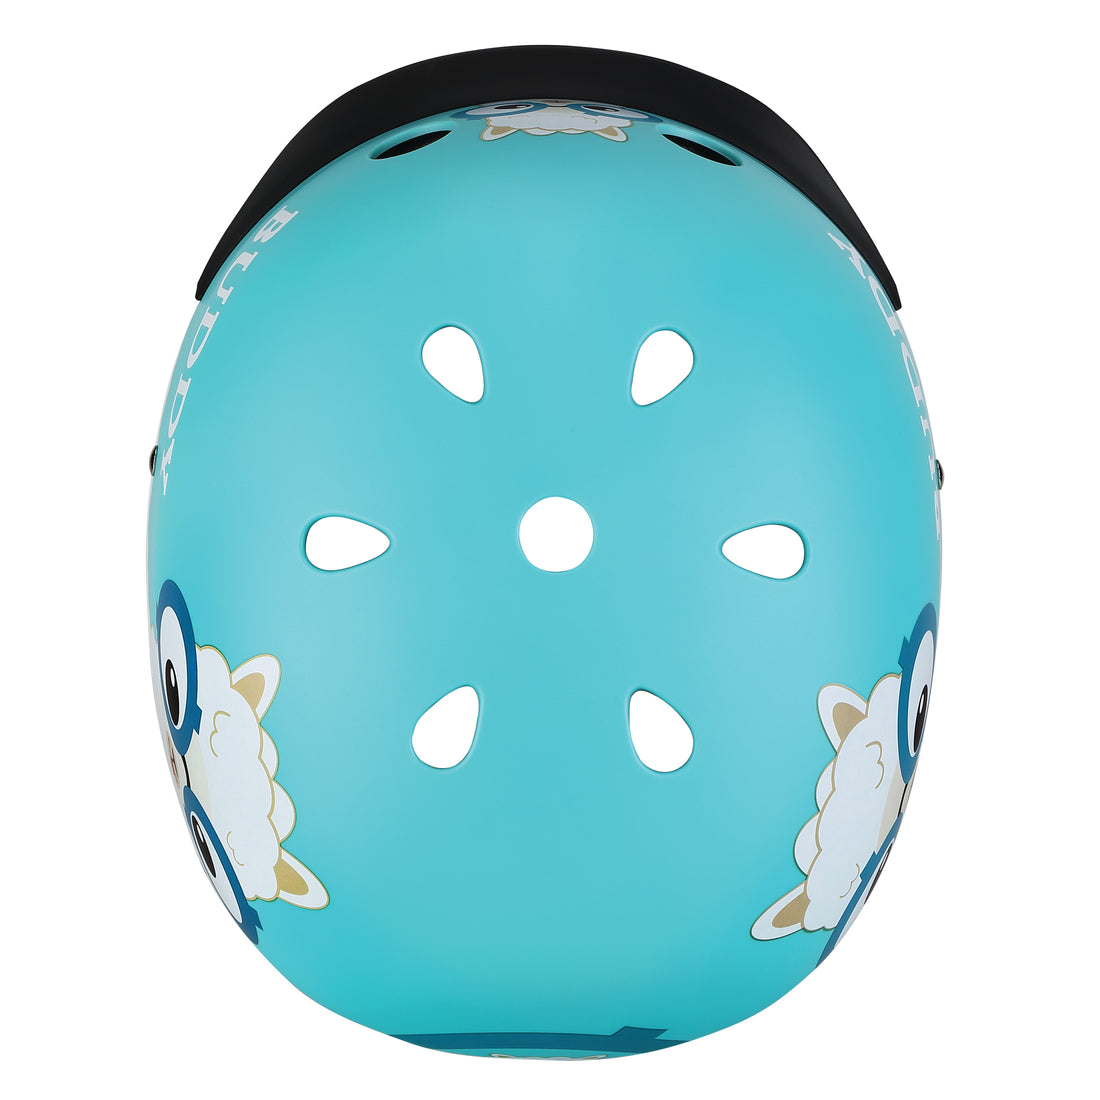 Globber Helmet Elite Lights XS-S (48-53cm) - Sky Blue Buddy